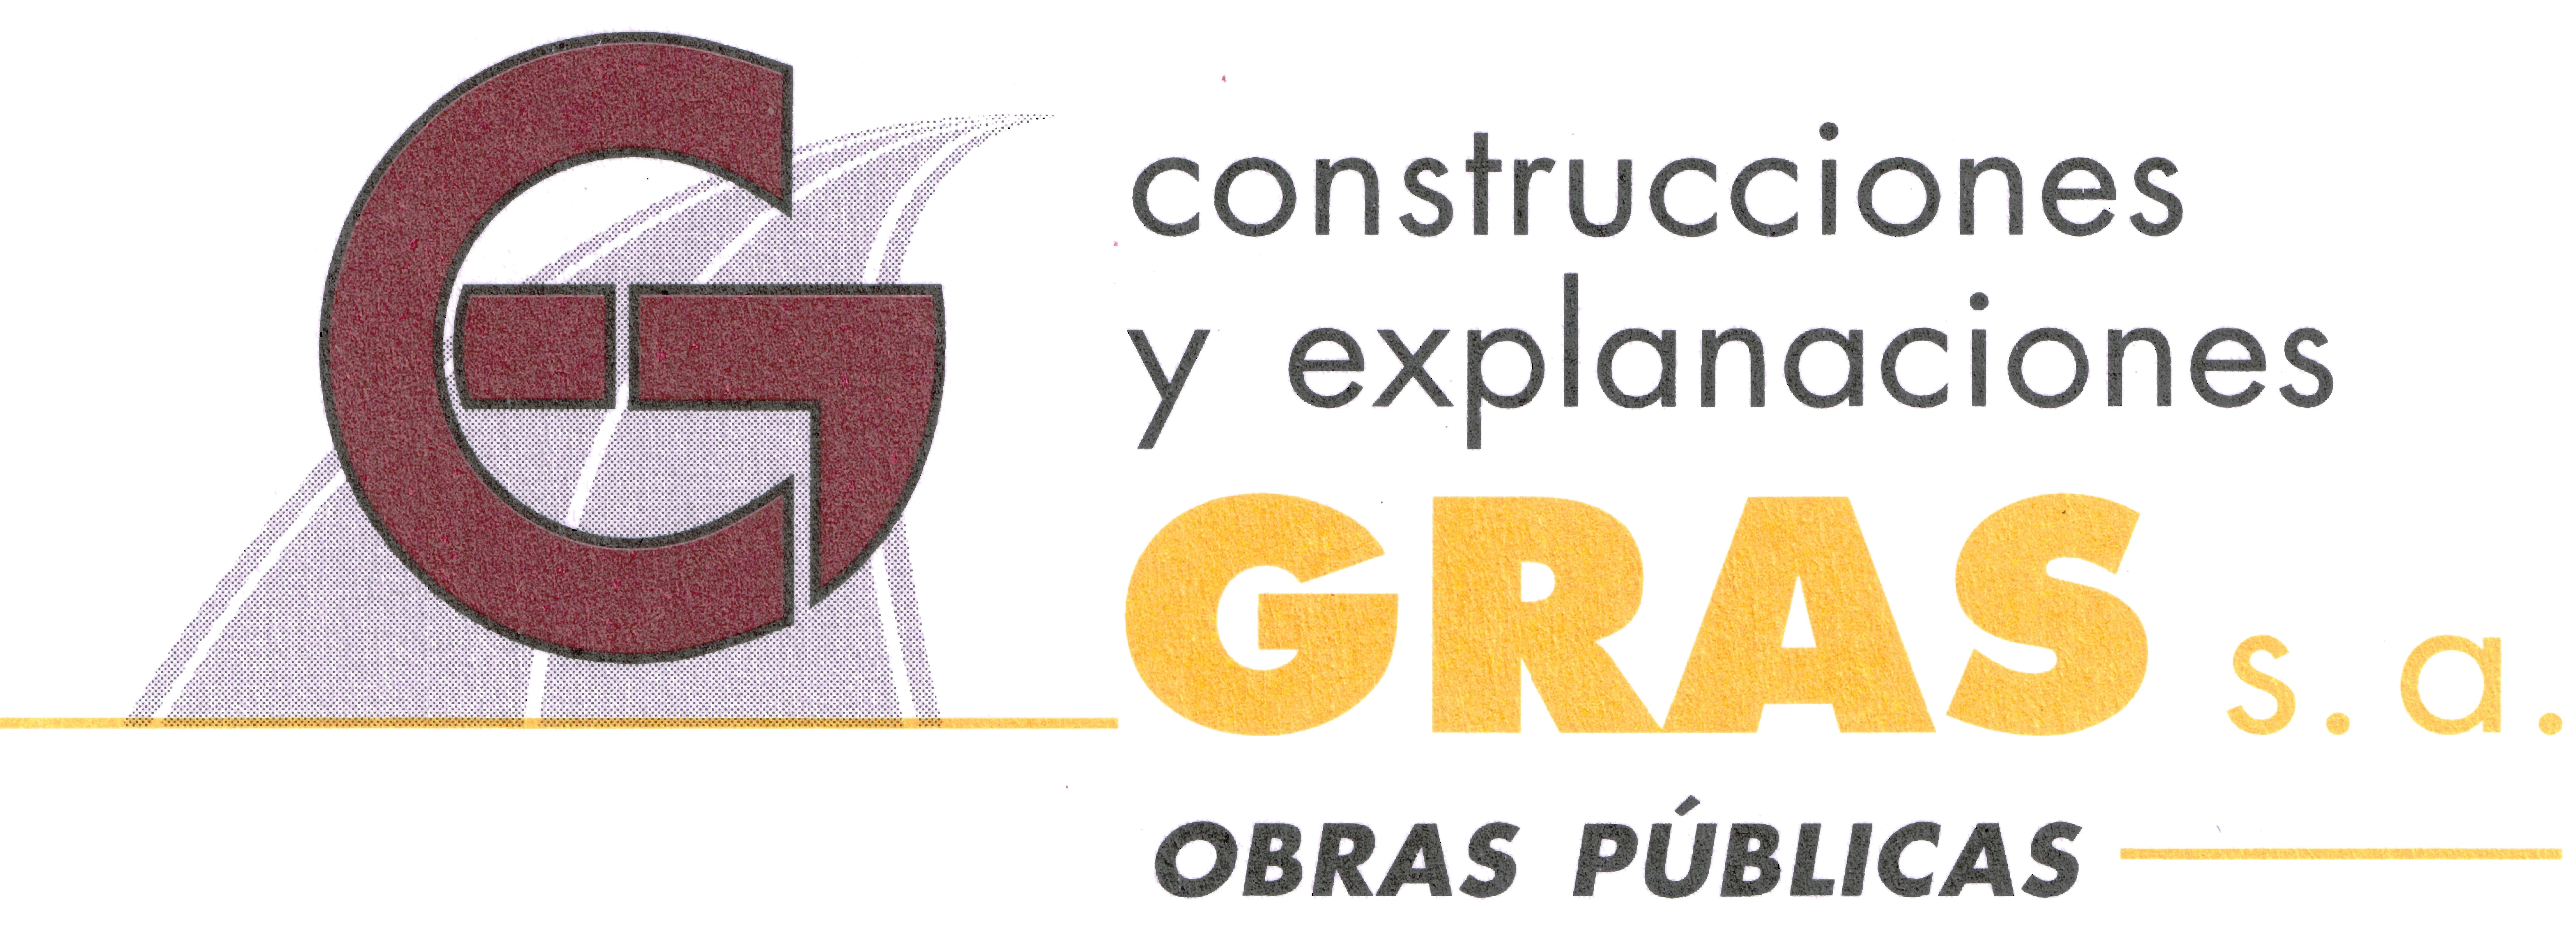 Construcciones y Explanaciones Gras, SA